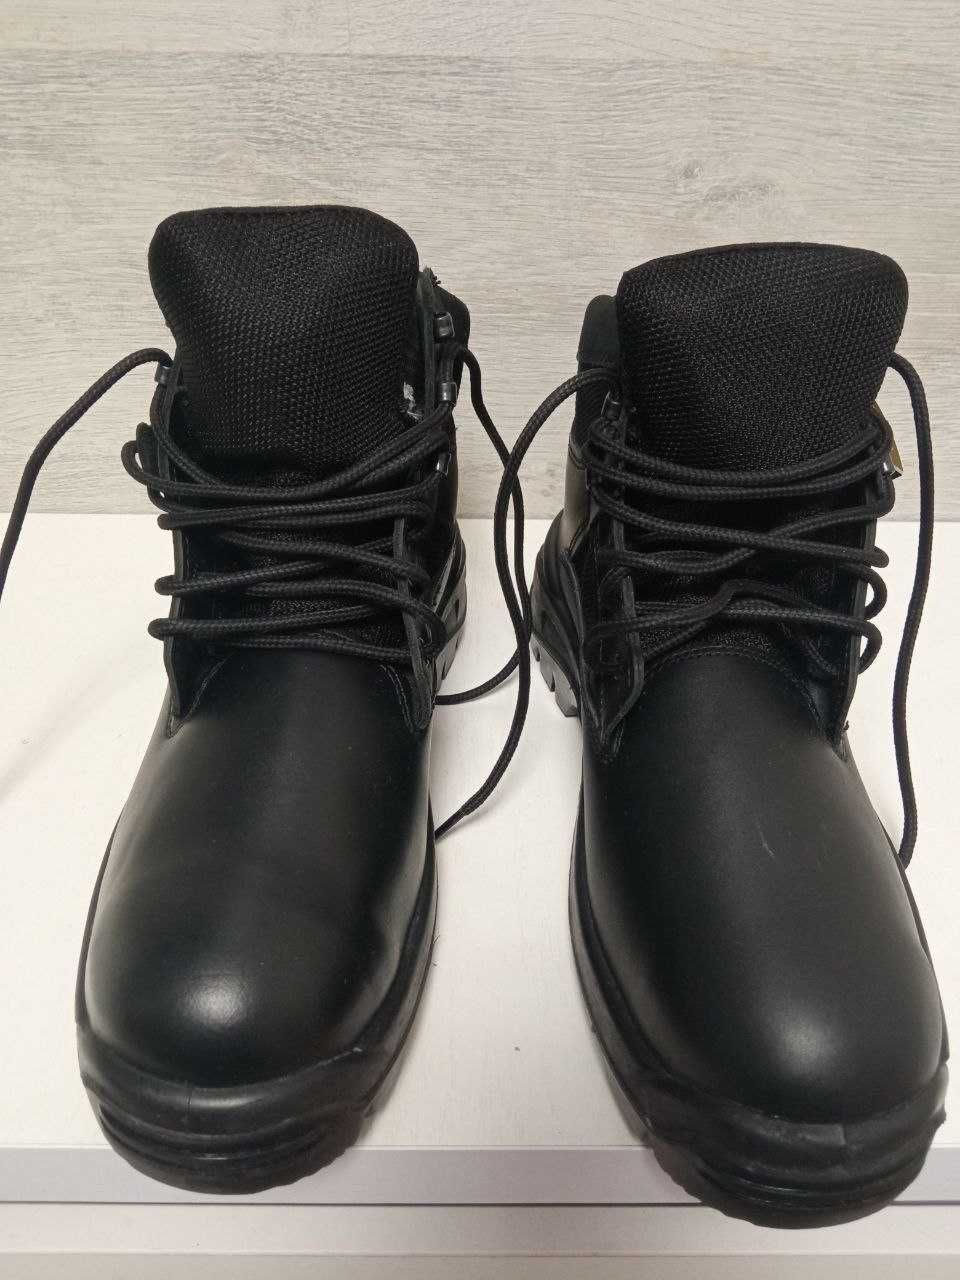 Ботинки Талан TALAN поліцейські черевики